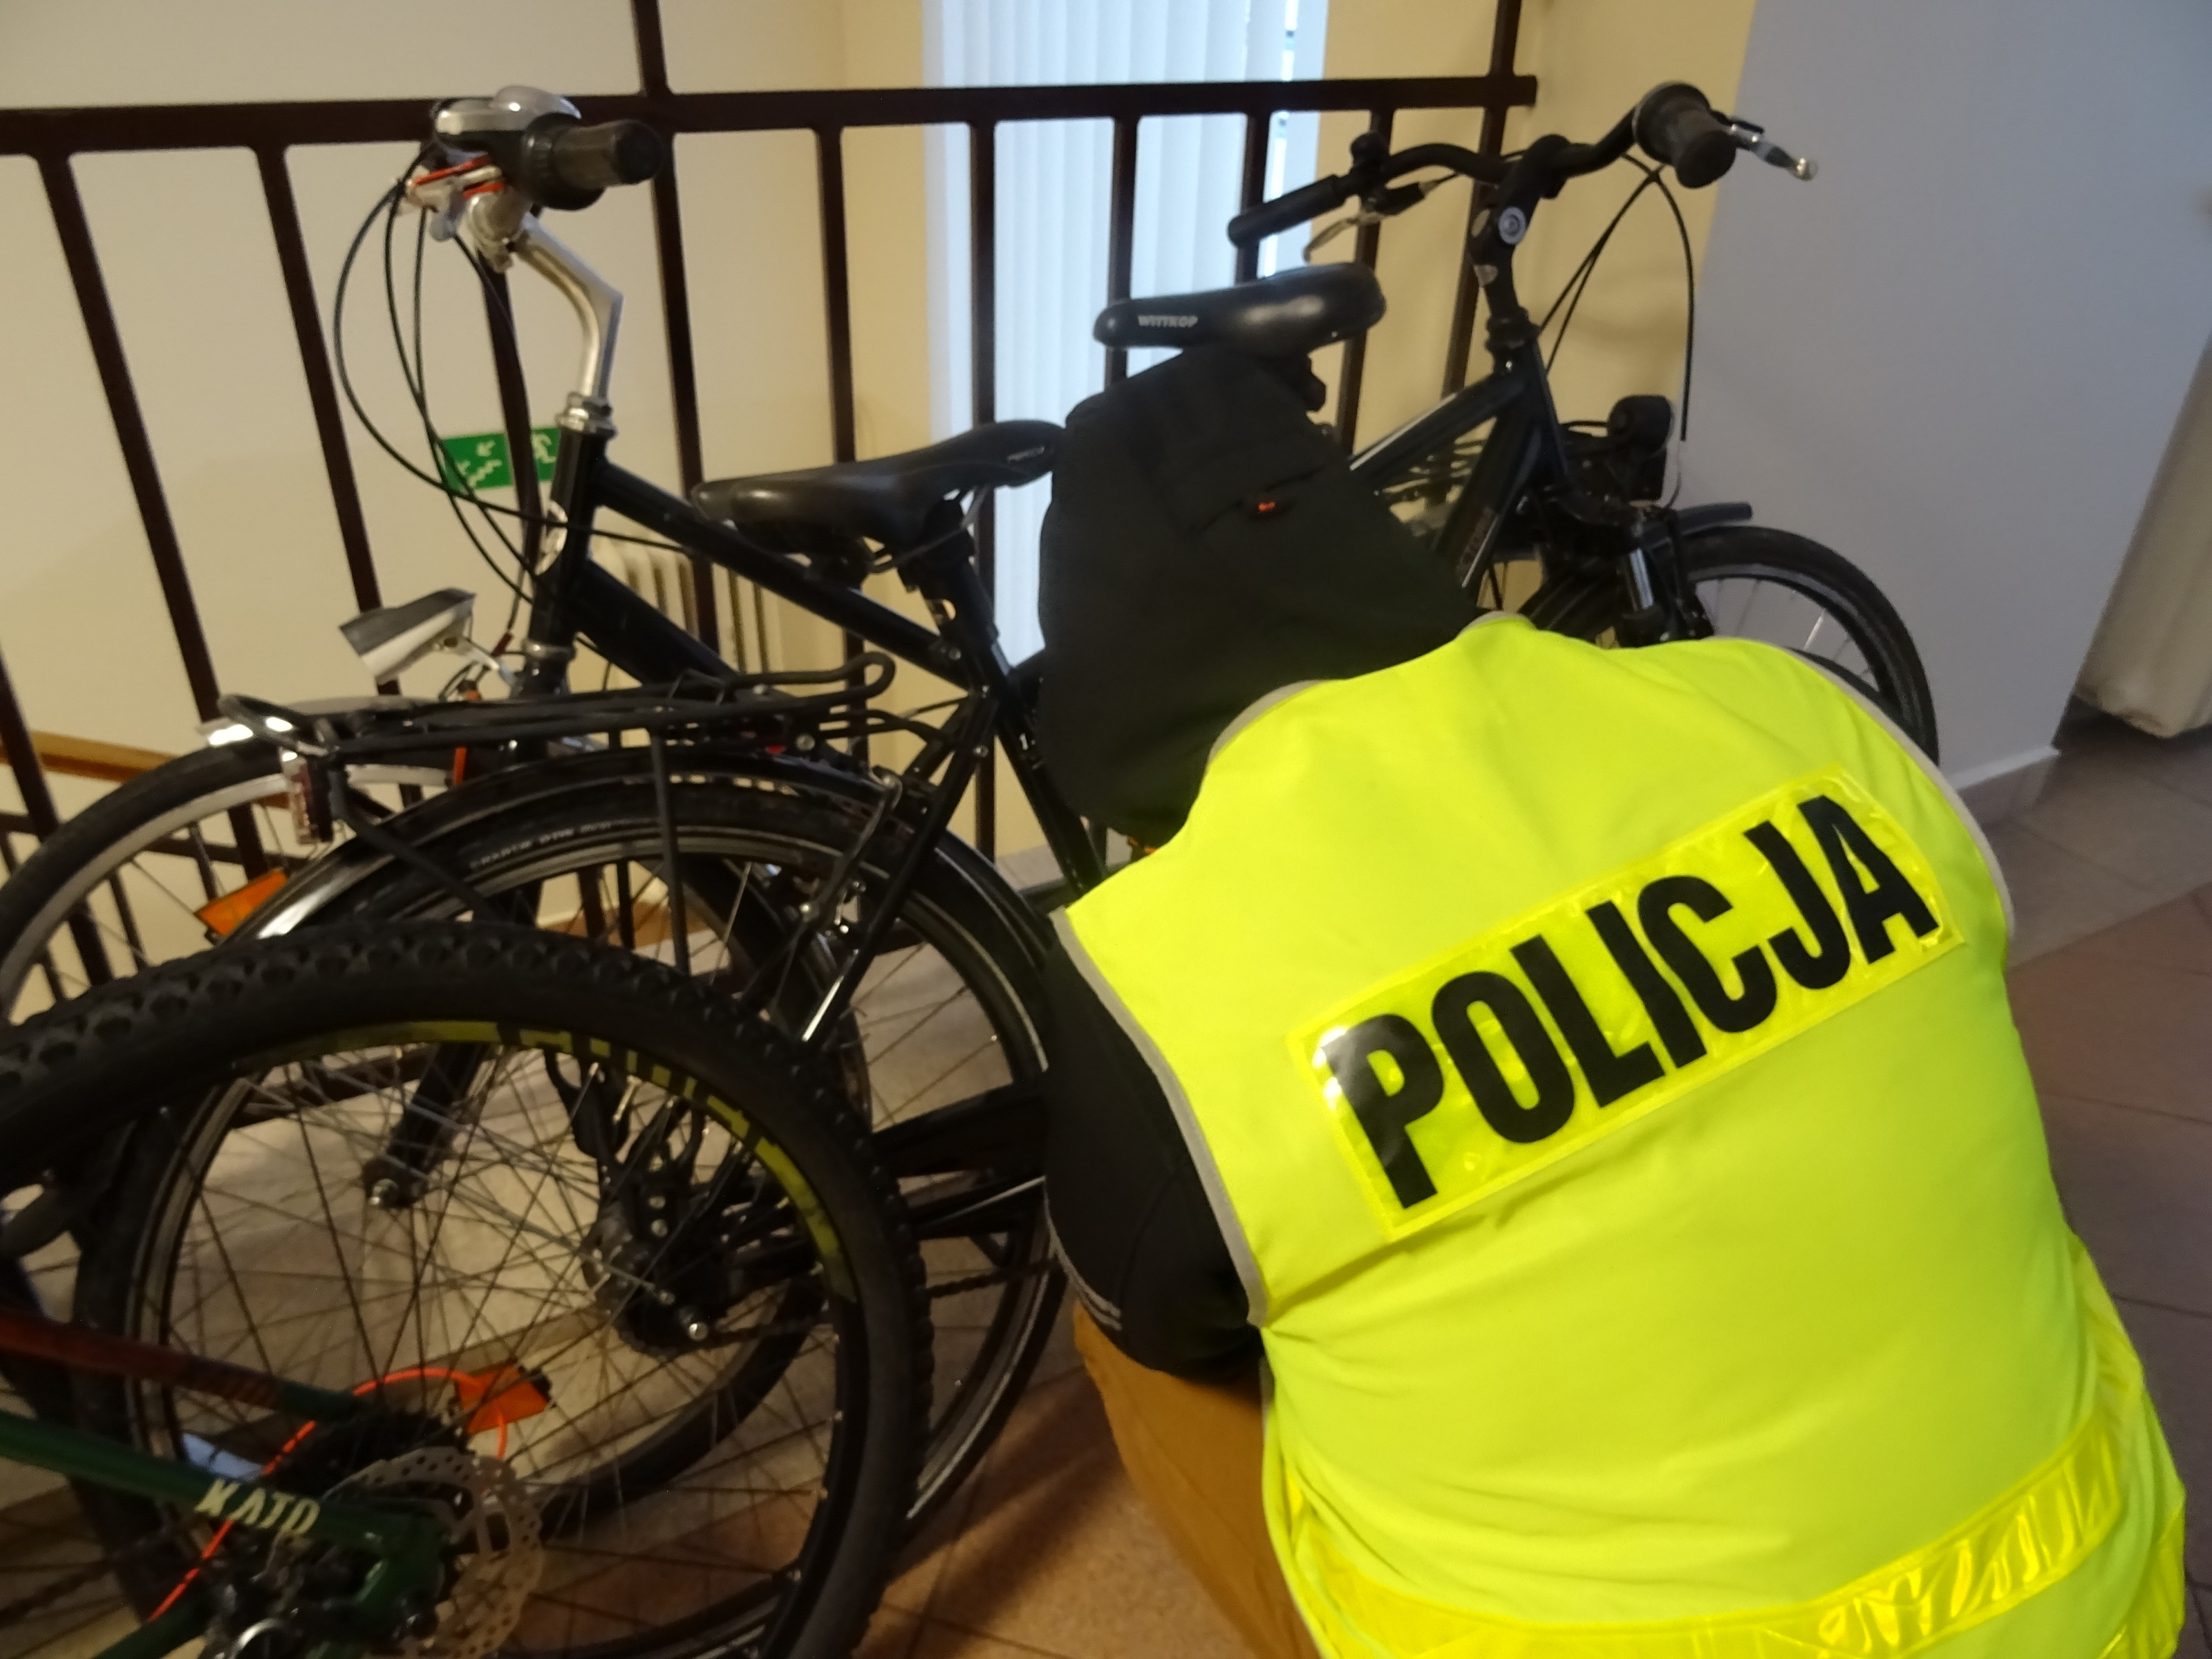 Oparte o barierkę dwa rowery koloru ciemnego i kucający przy nich policjant odwrócony tyłem w żółtej kamizelce z czarnym napisem Policja